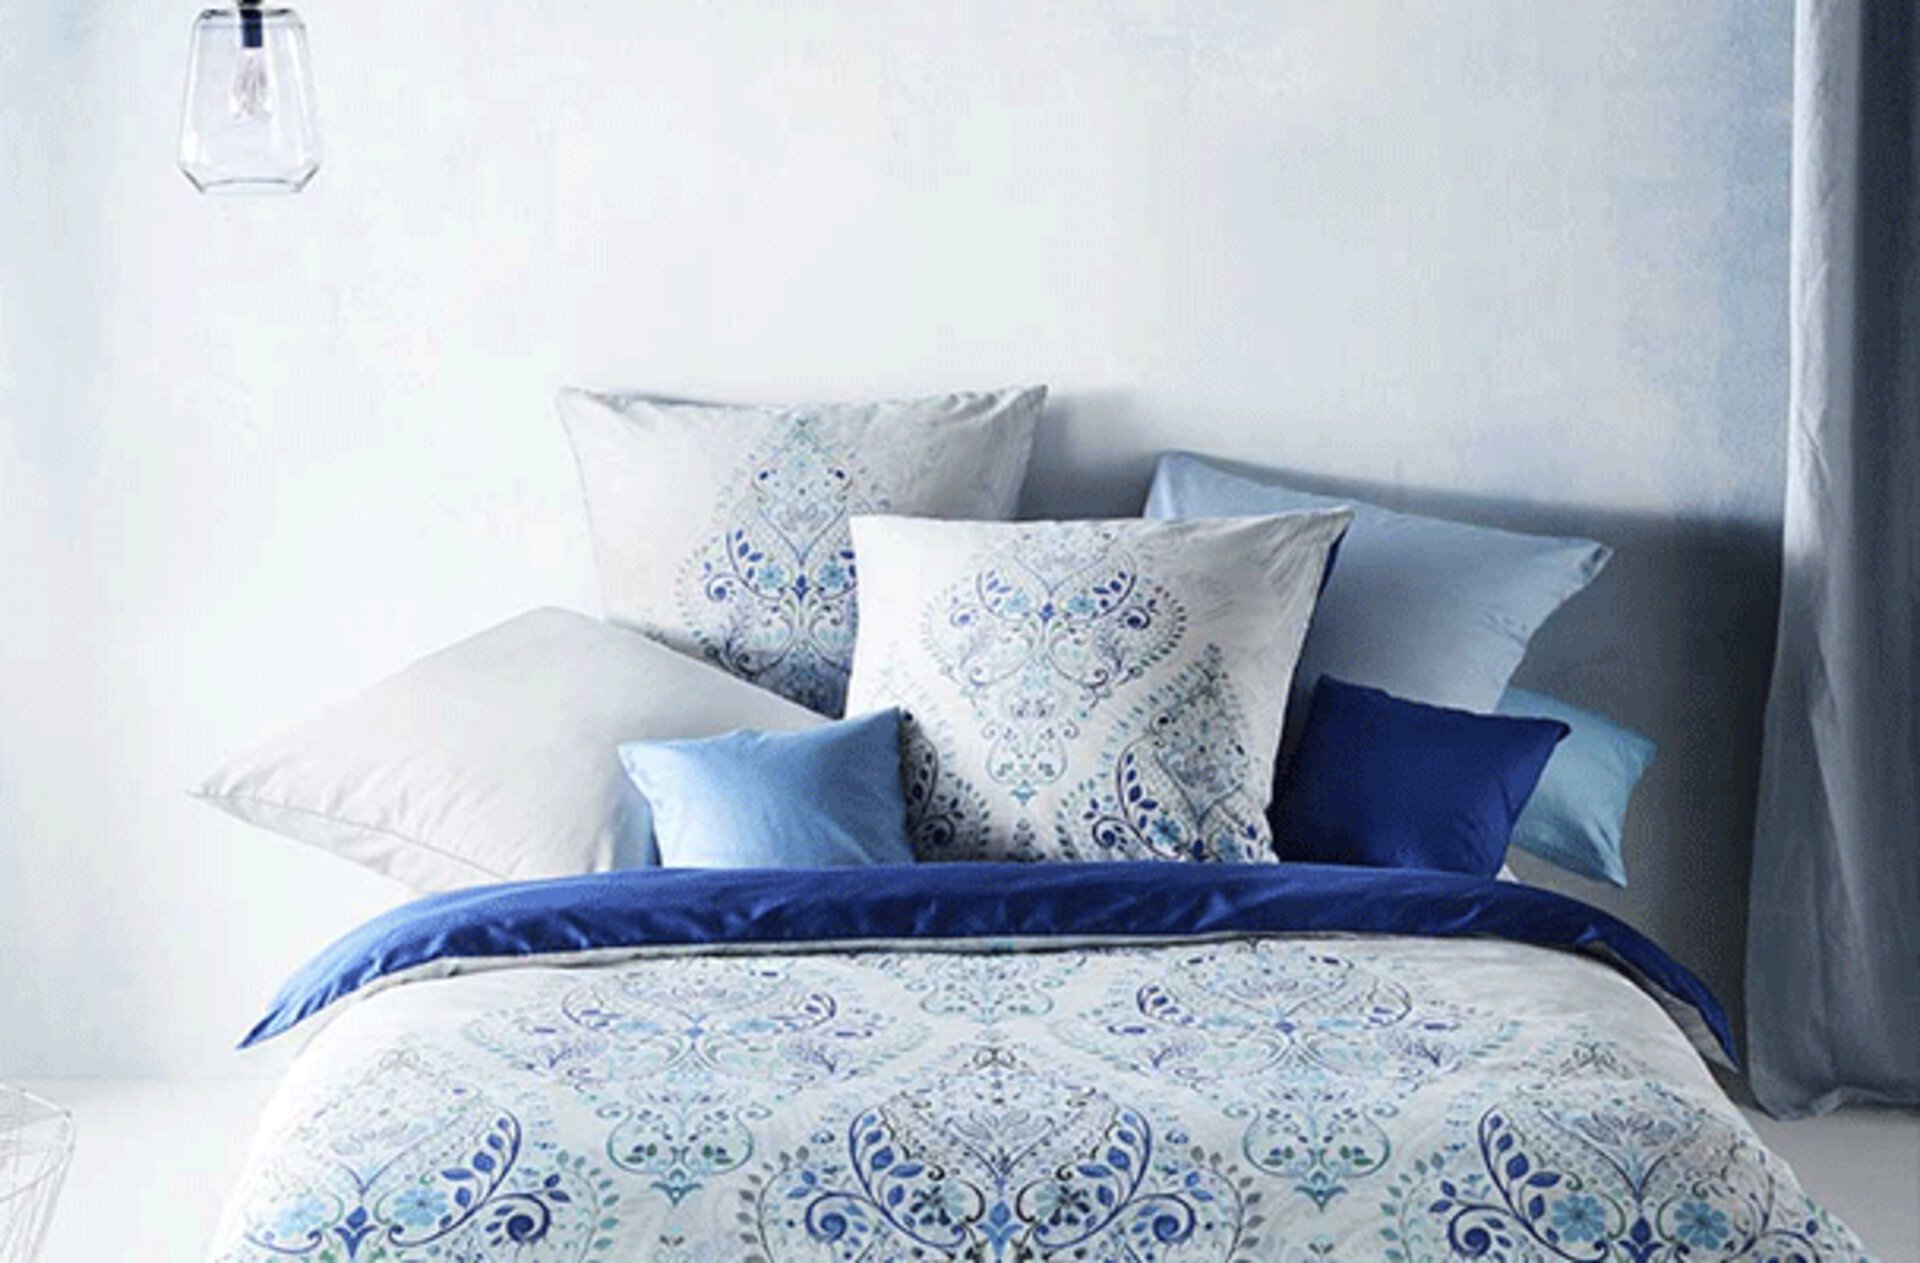 Bettwäsche in Weiß und Blau mit Paisley-Muster.